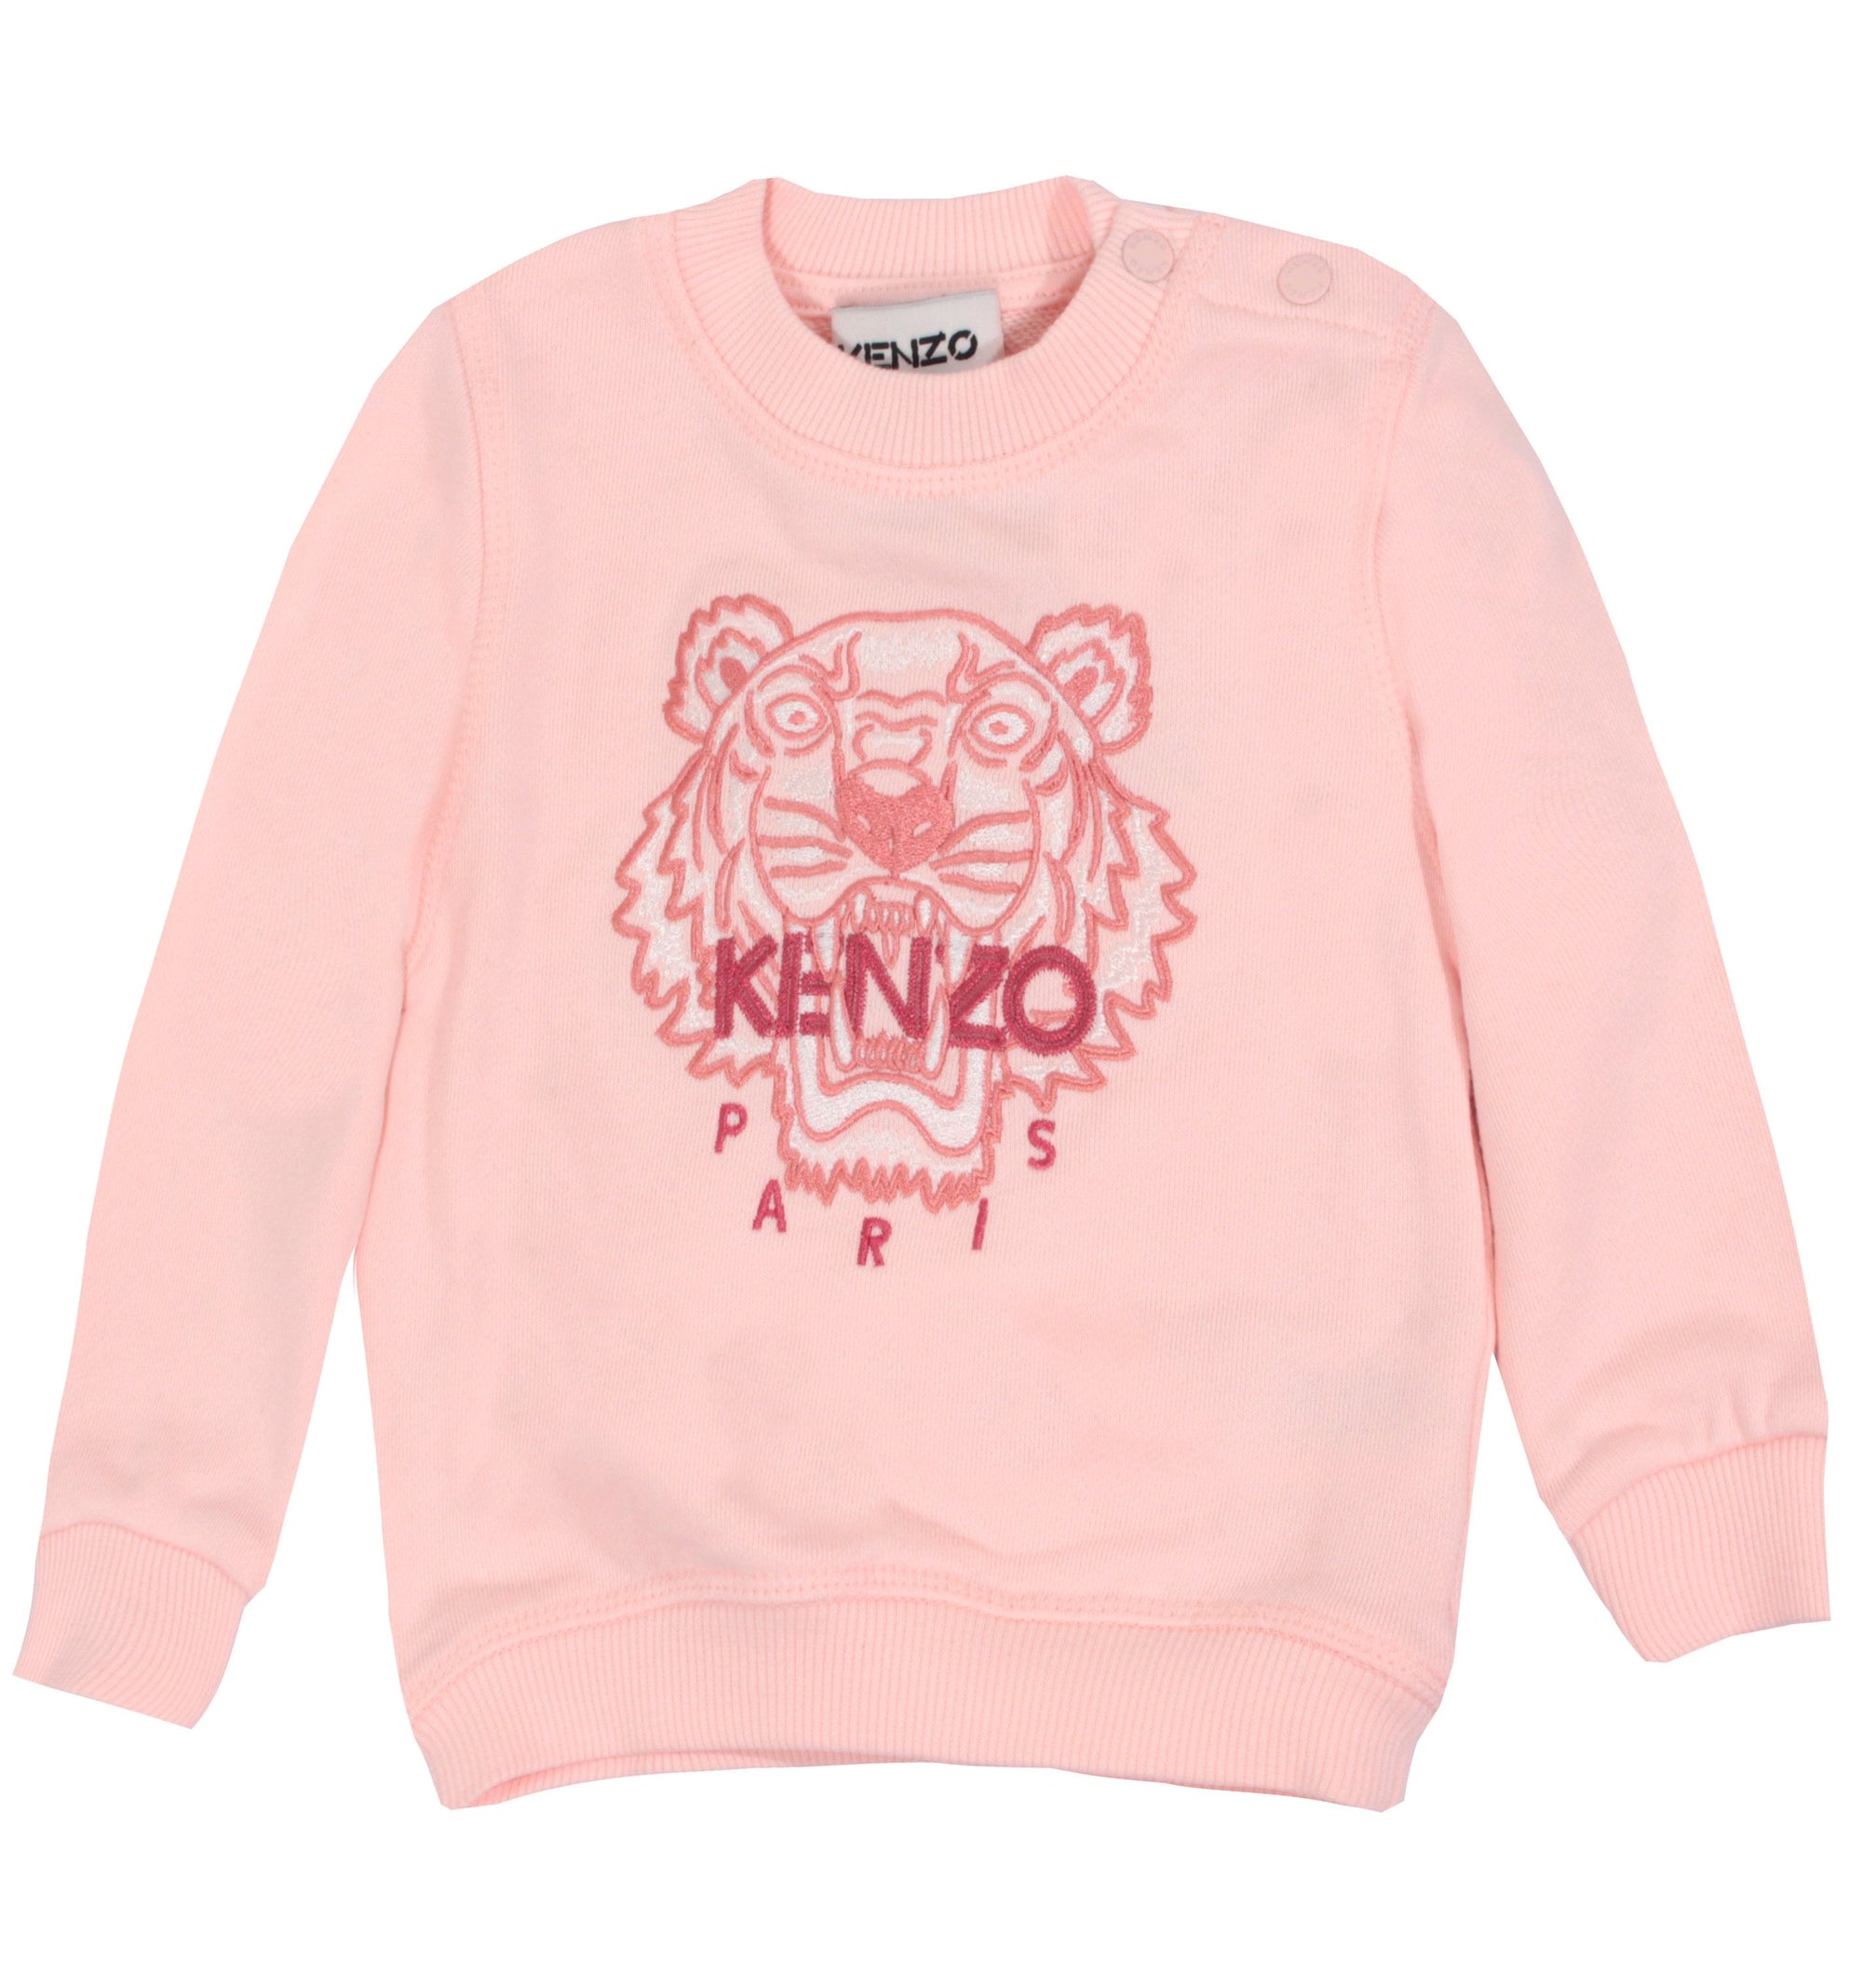 Kenzo Sweatshirt - Pink